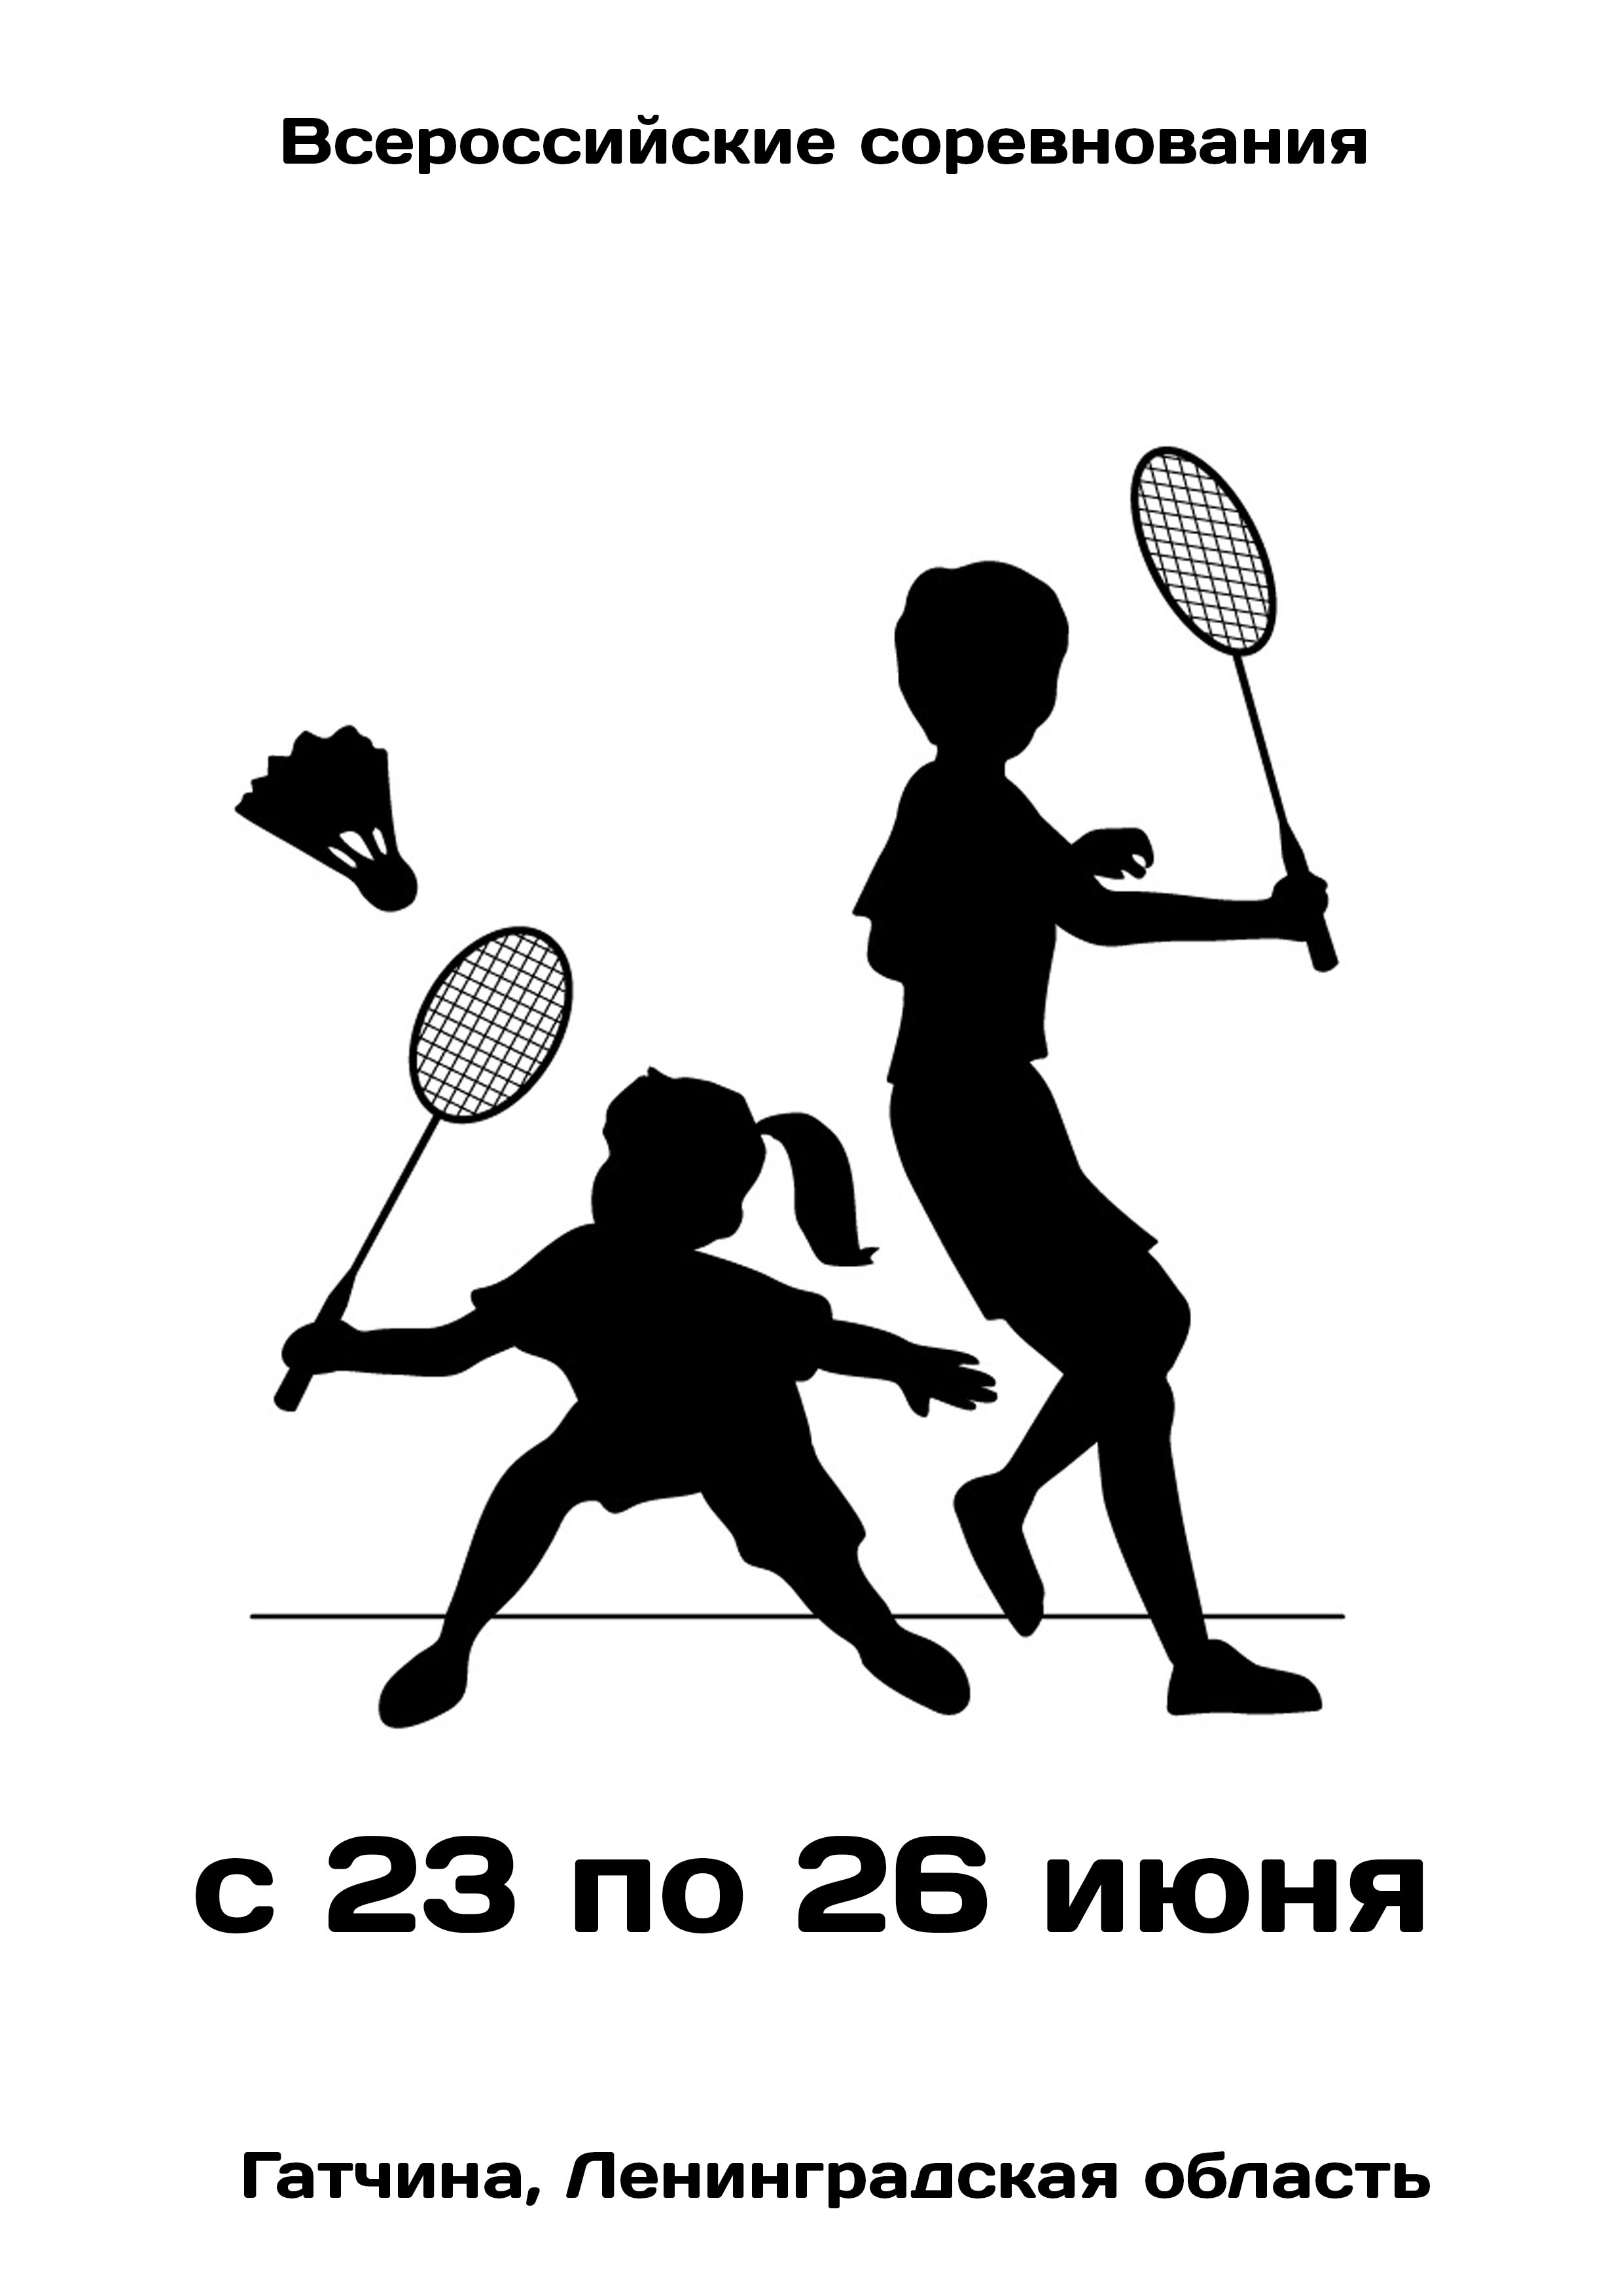 Всероссийские соревнования  по бадминтону 23  Bulan juni
 2023  tahun
 